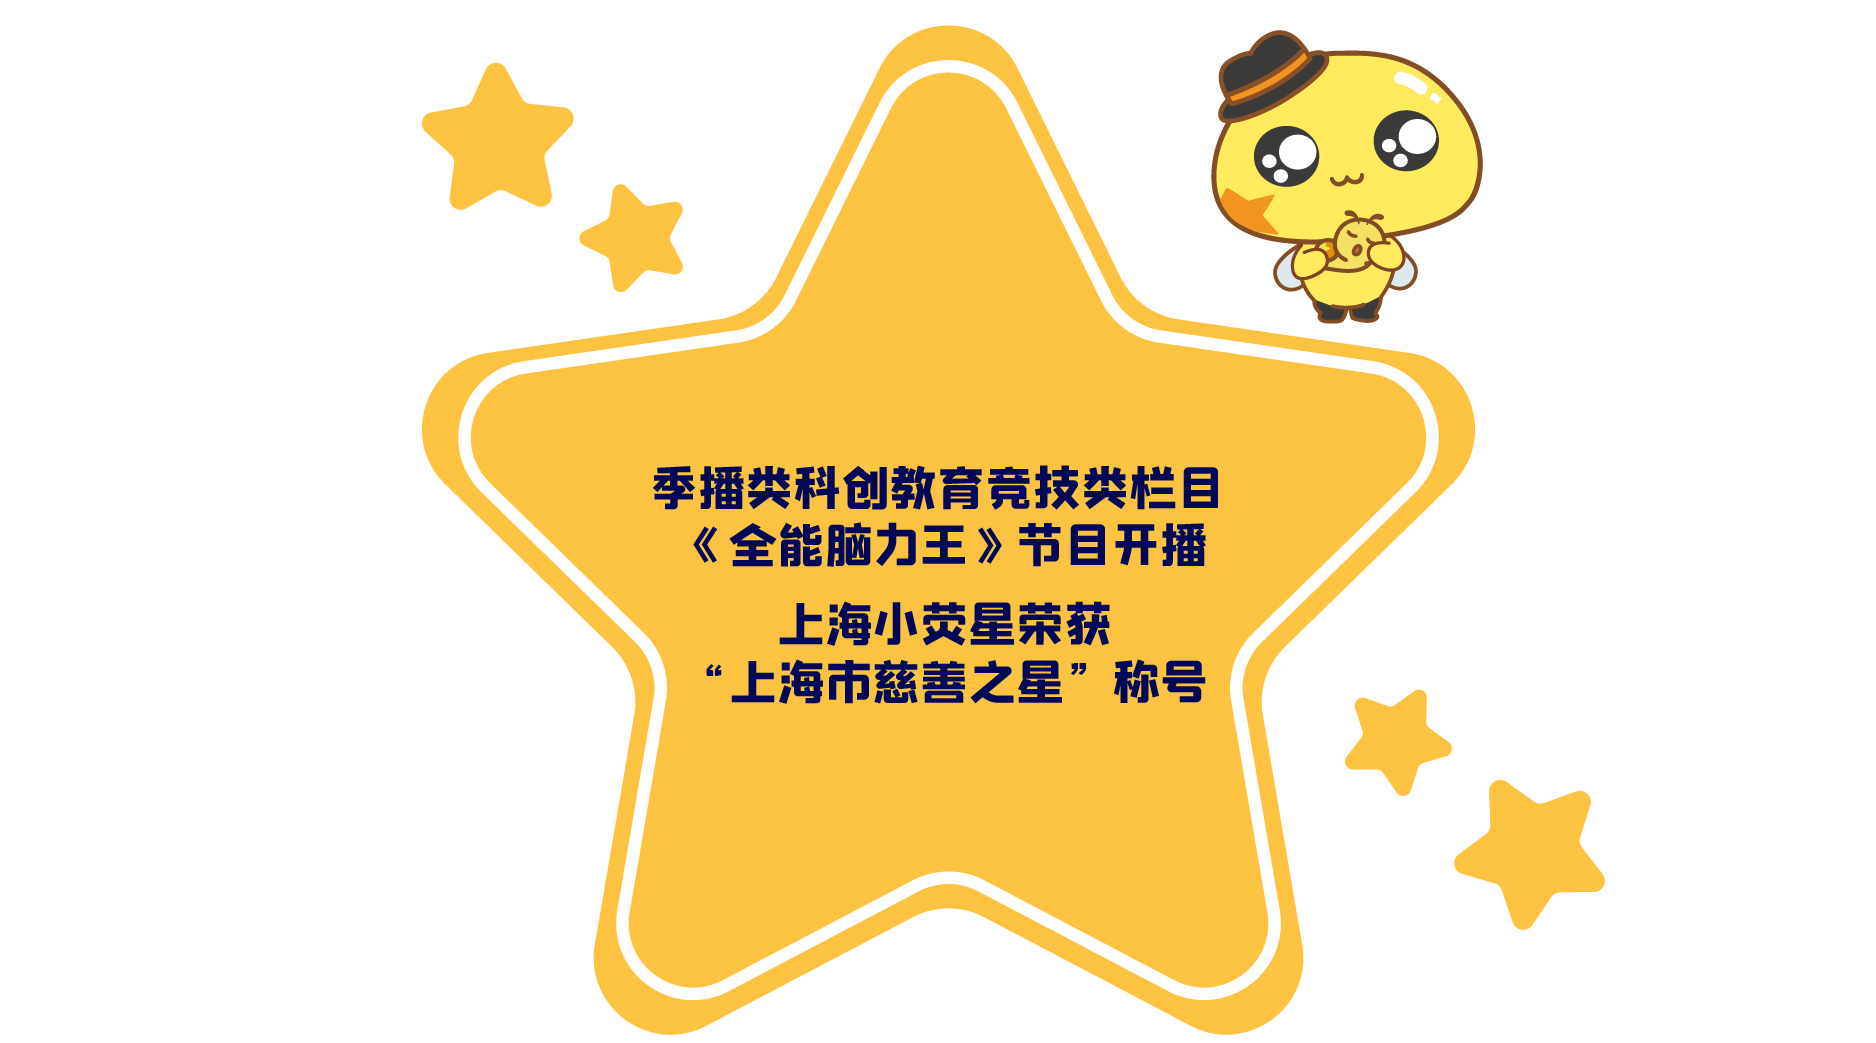 上海小荧星荣获“上海市慈善之星”称号